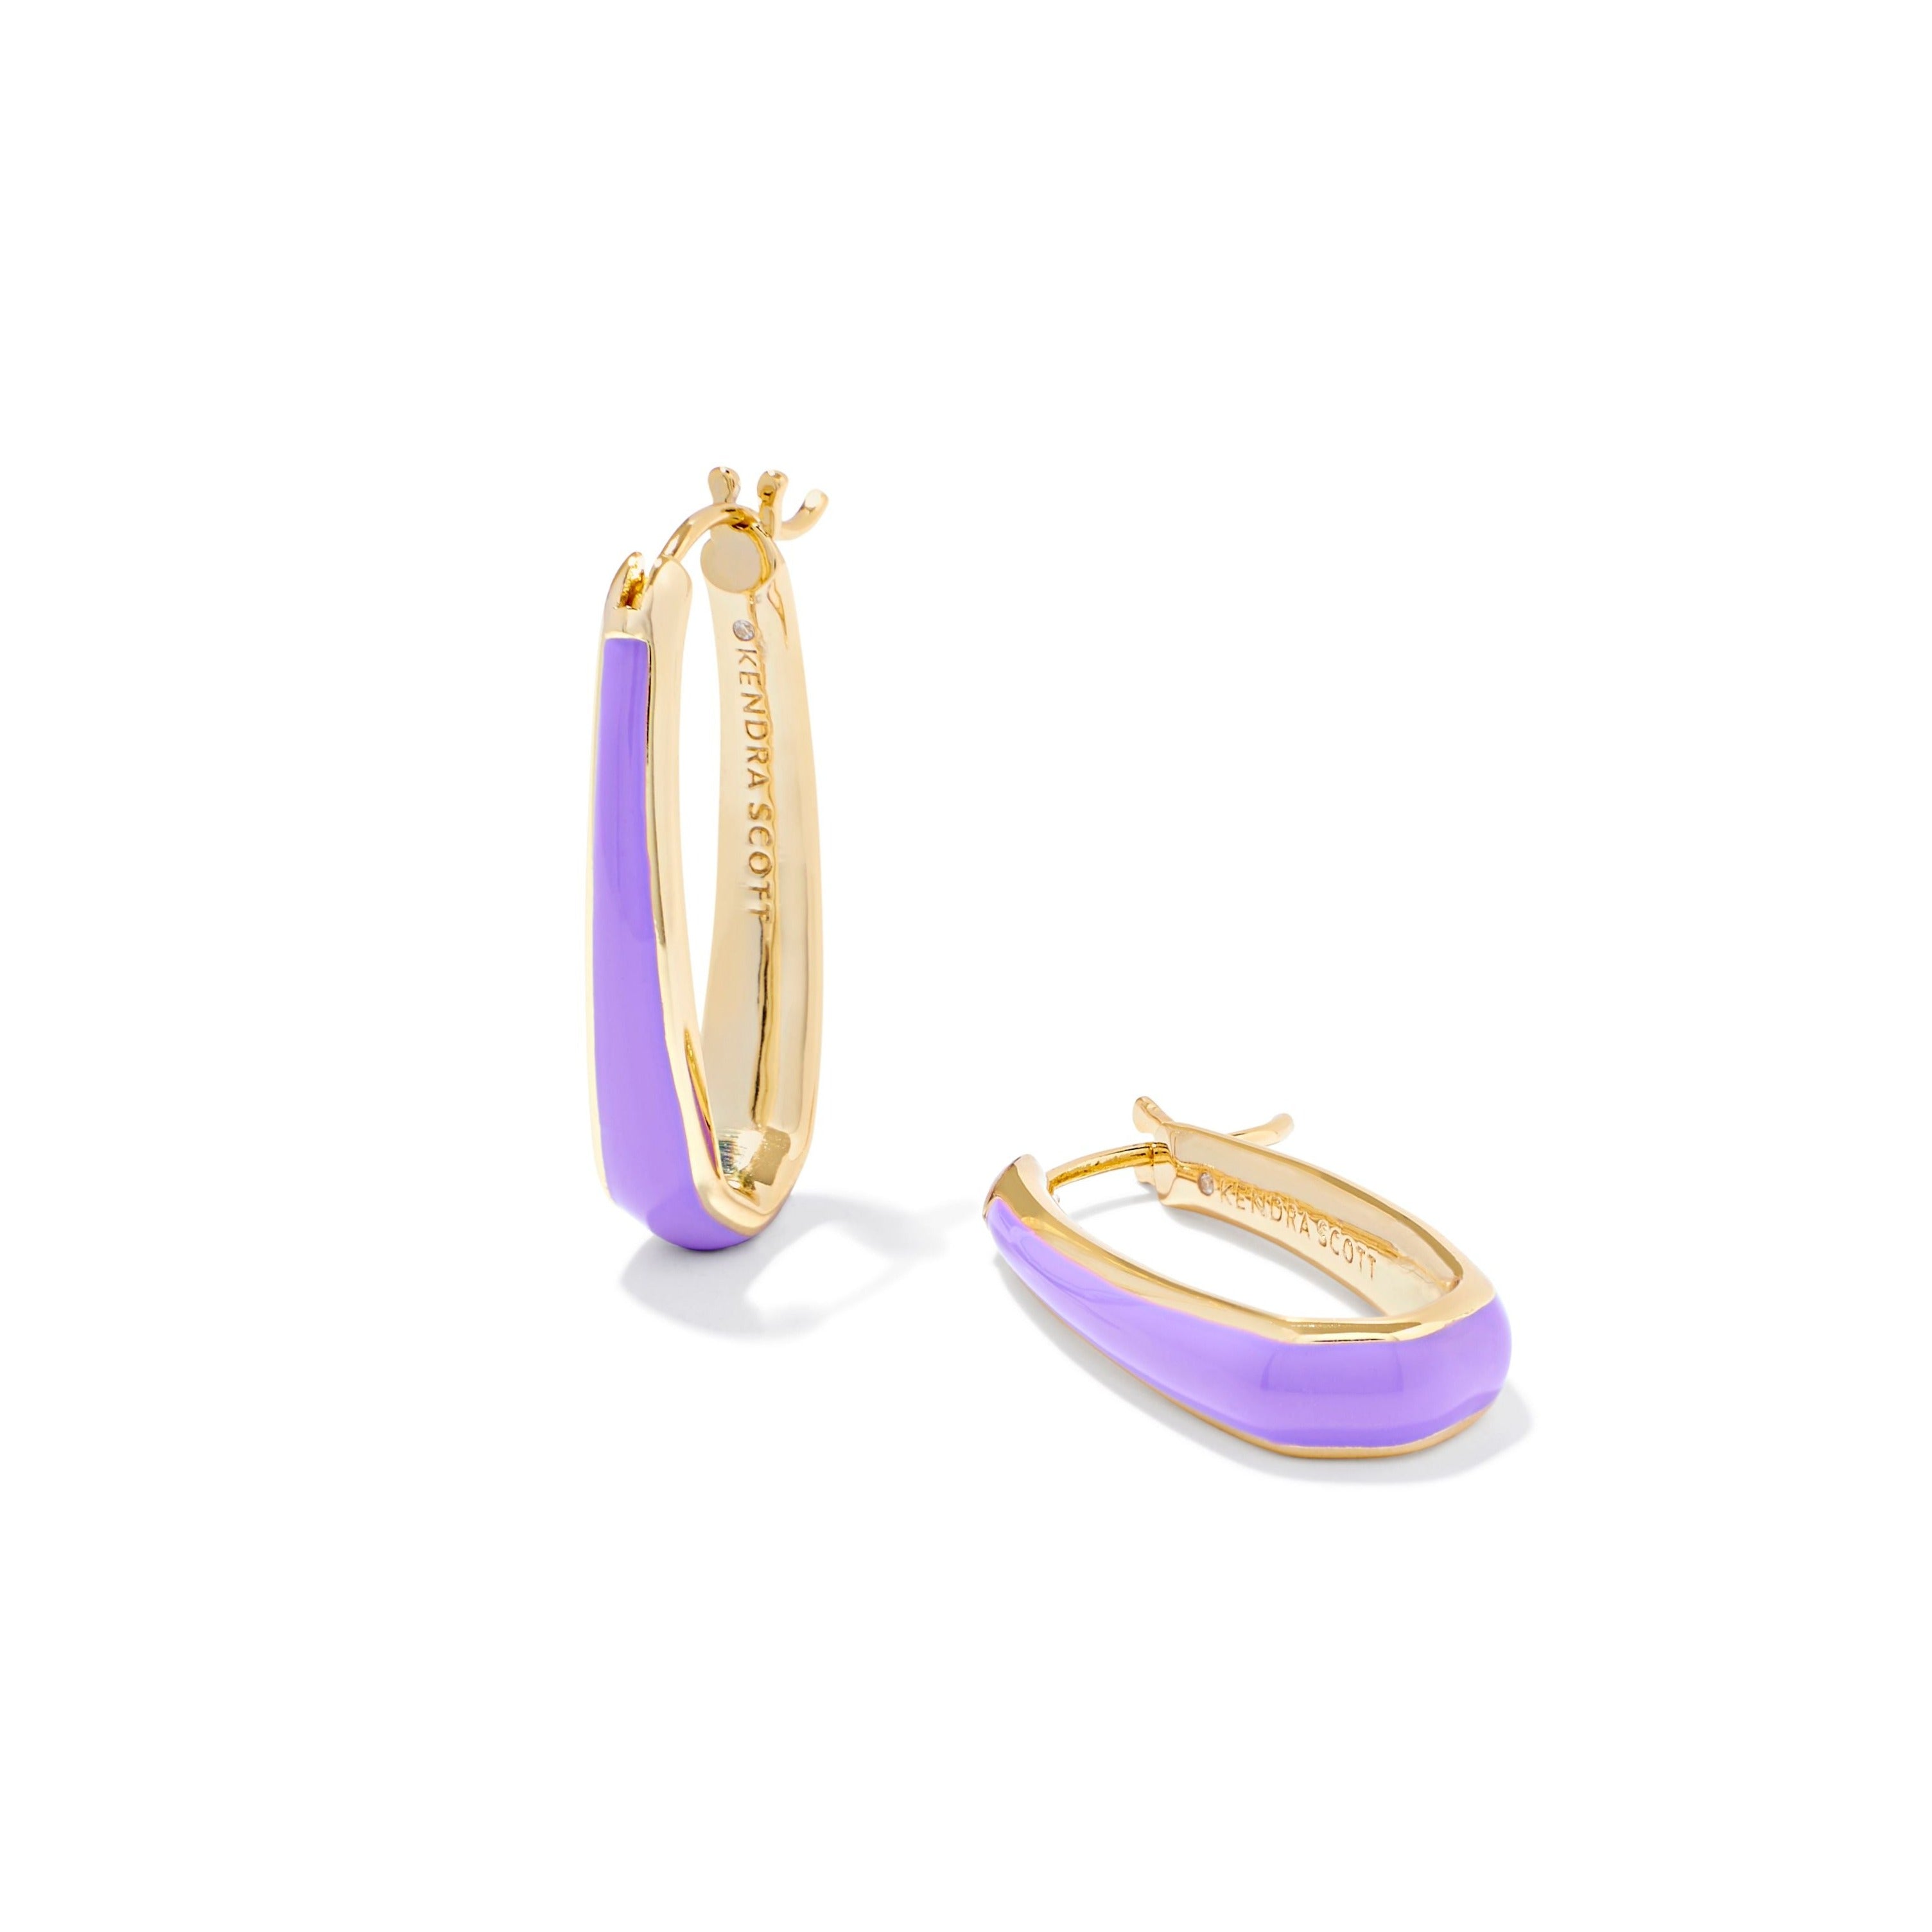 Kendra Scott | Kelsey Gold Hoop Earrings in Purple Enamel